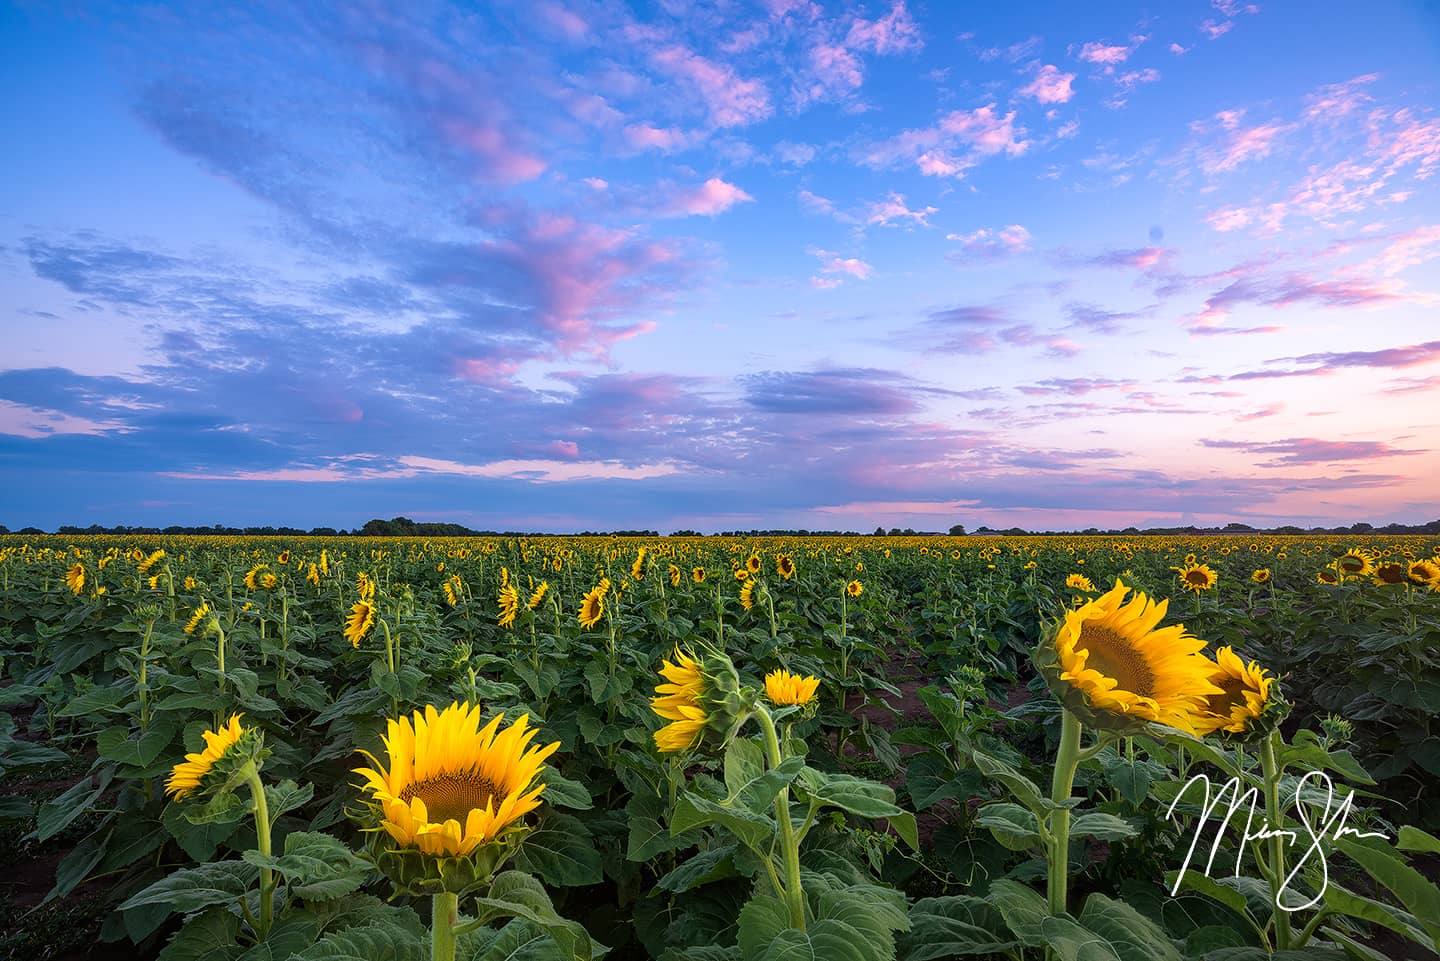 Sunflowers at Attention - Near Wichita, Kansas